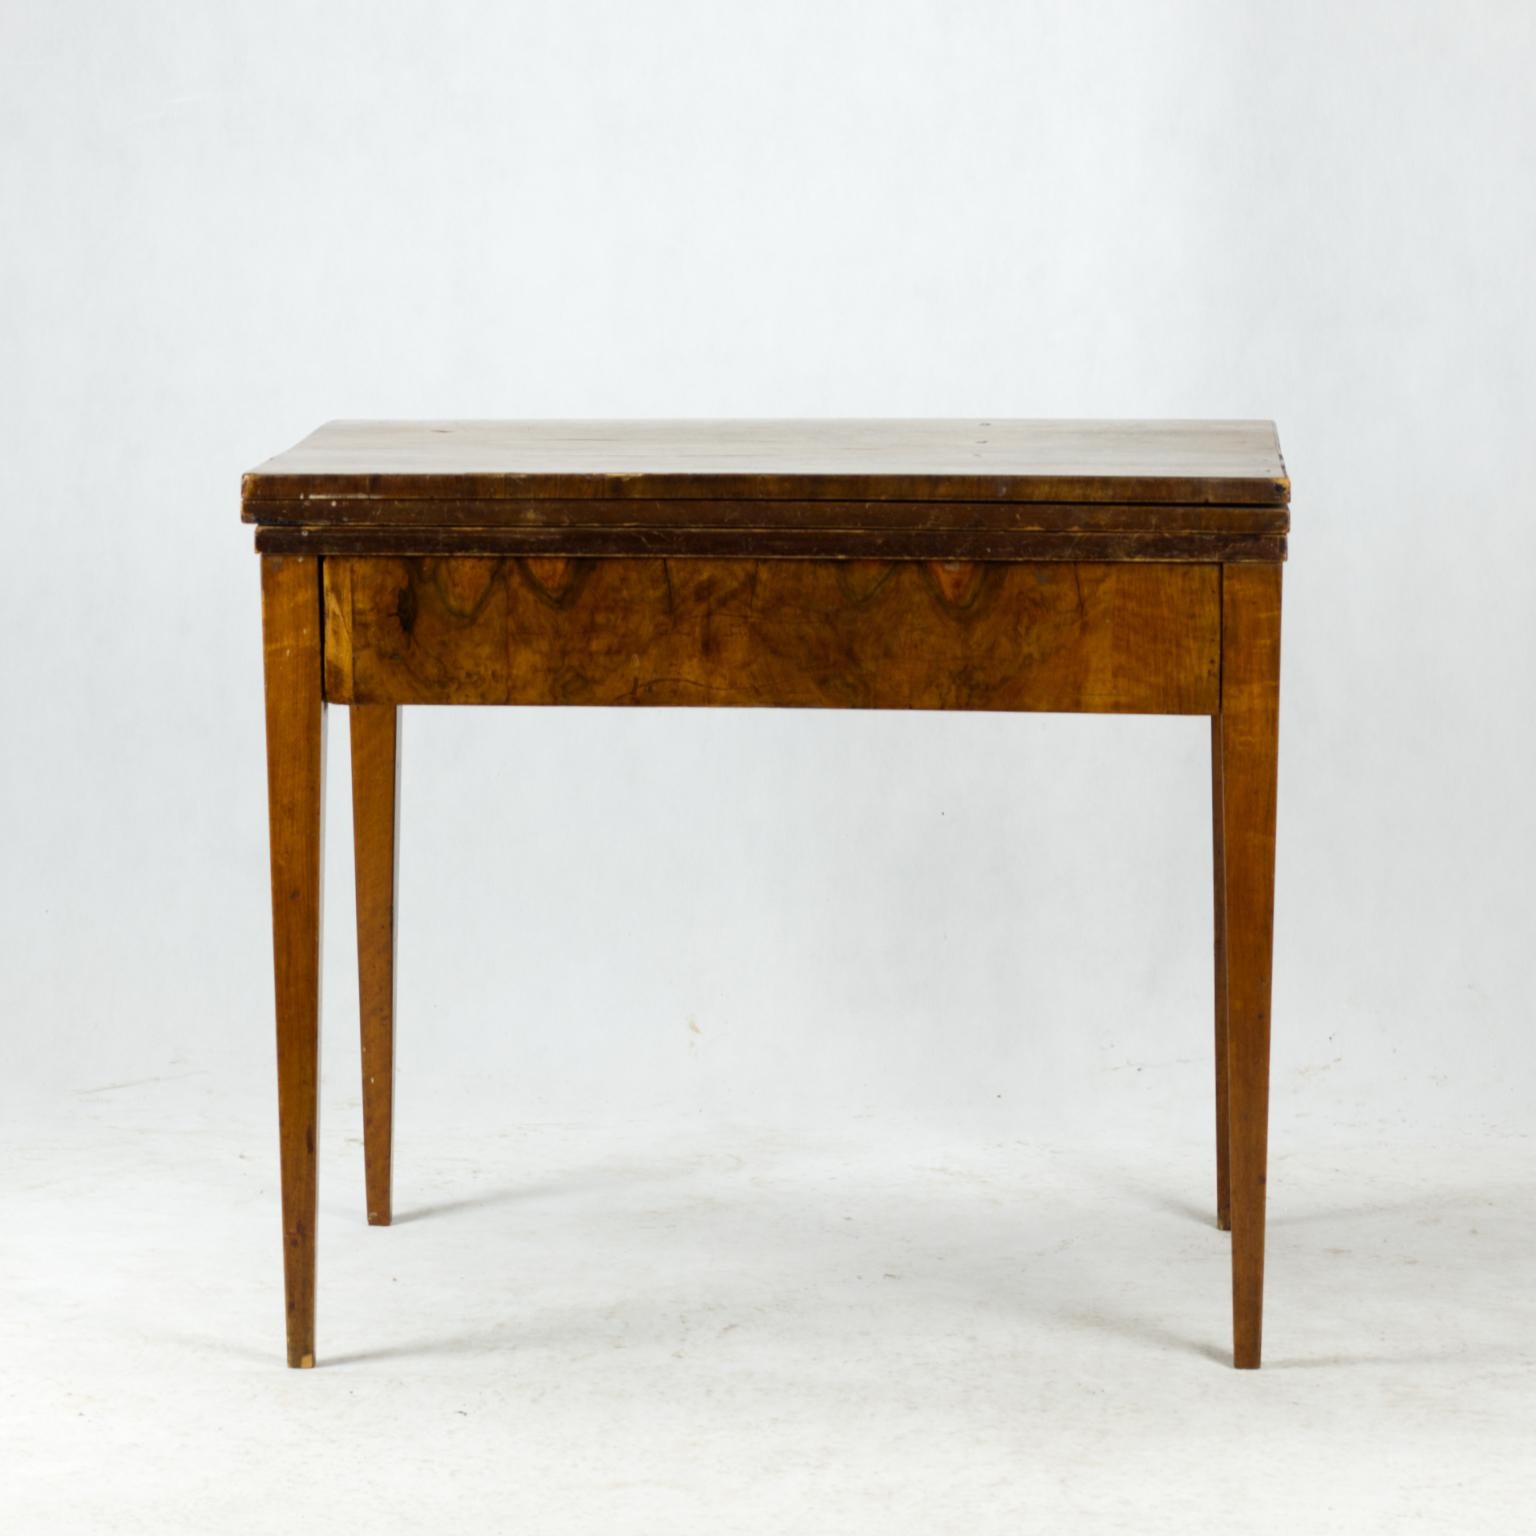 Cette table date de la période Biedermeier, au début du XIXe siècle. Le corps de la table est en bois d'épicéa et a été recouvert d'un très beau placage épais en noyer. La table est en bon état. La taille de la table déployée est de 81 x 119 cm.